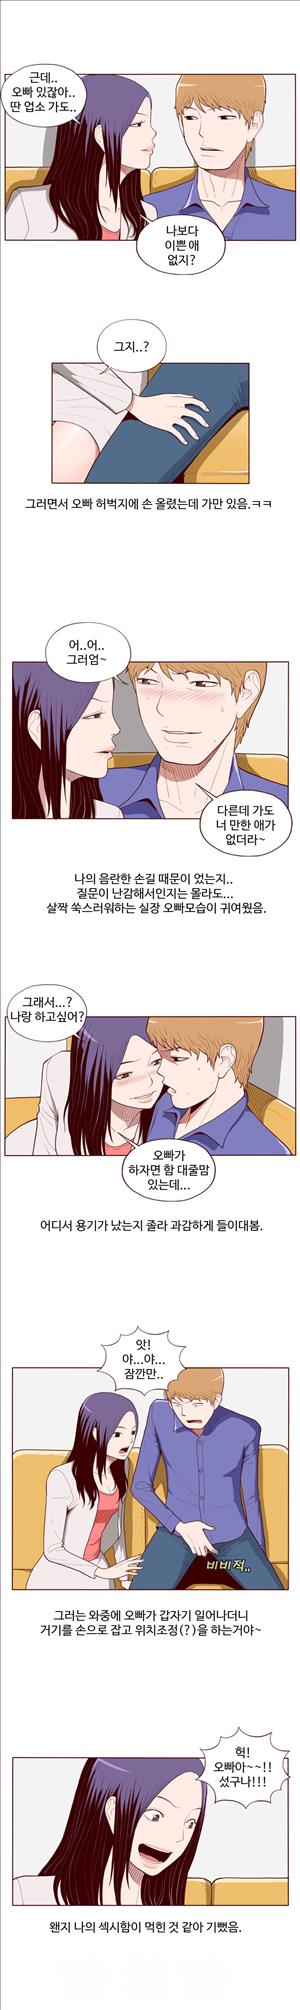 미색 - 썰만화 시즌4 52화 - 오피녀의 비밀(하)_2